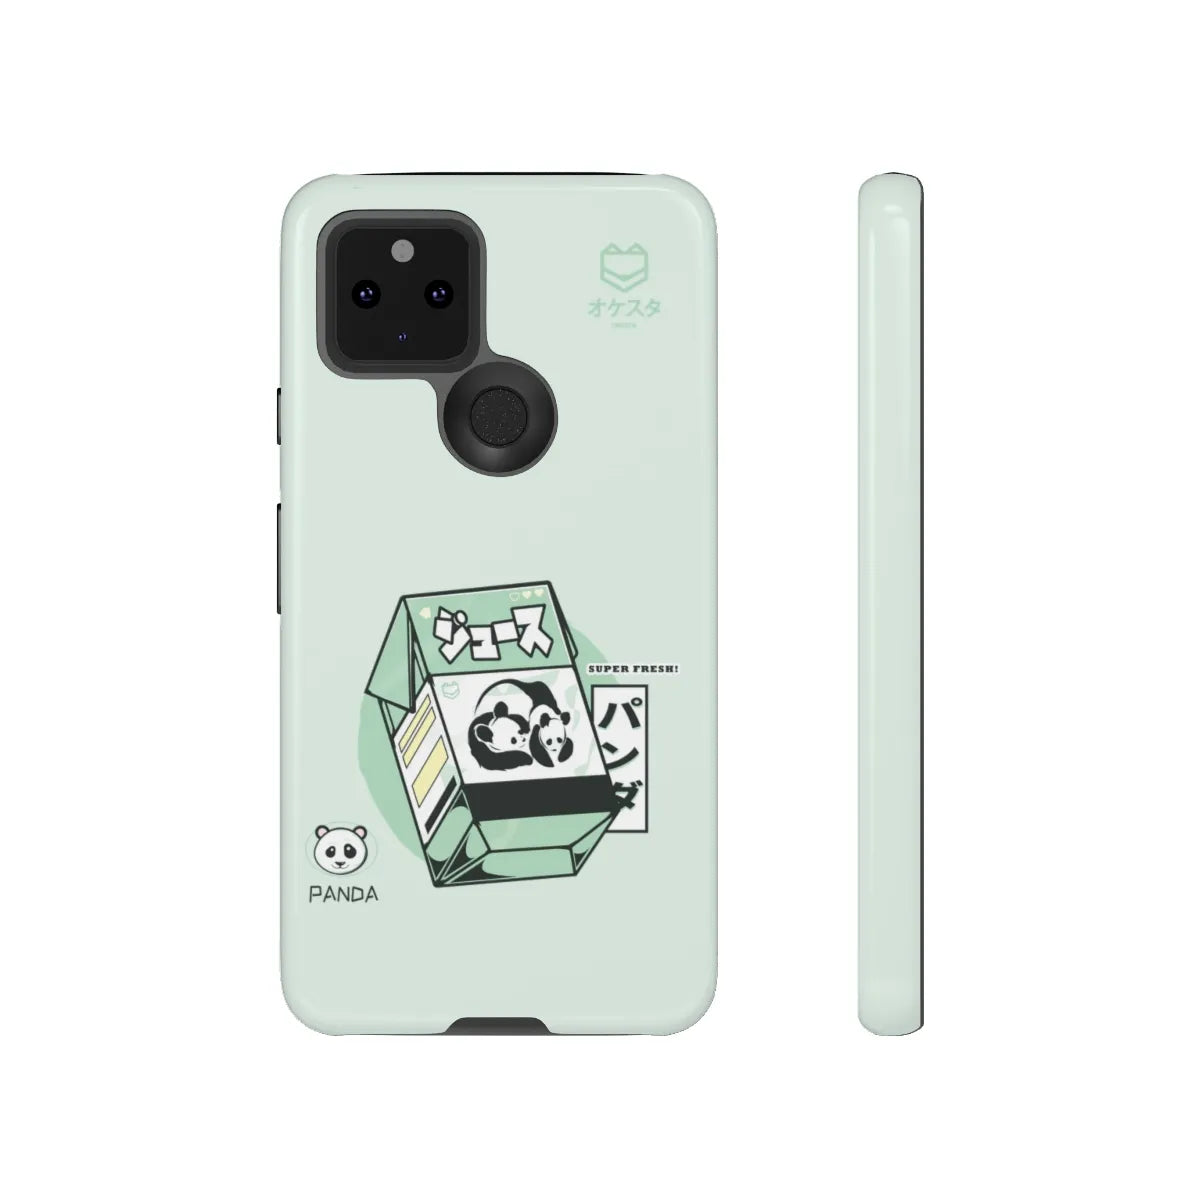 Panda Box Google Pixel Case